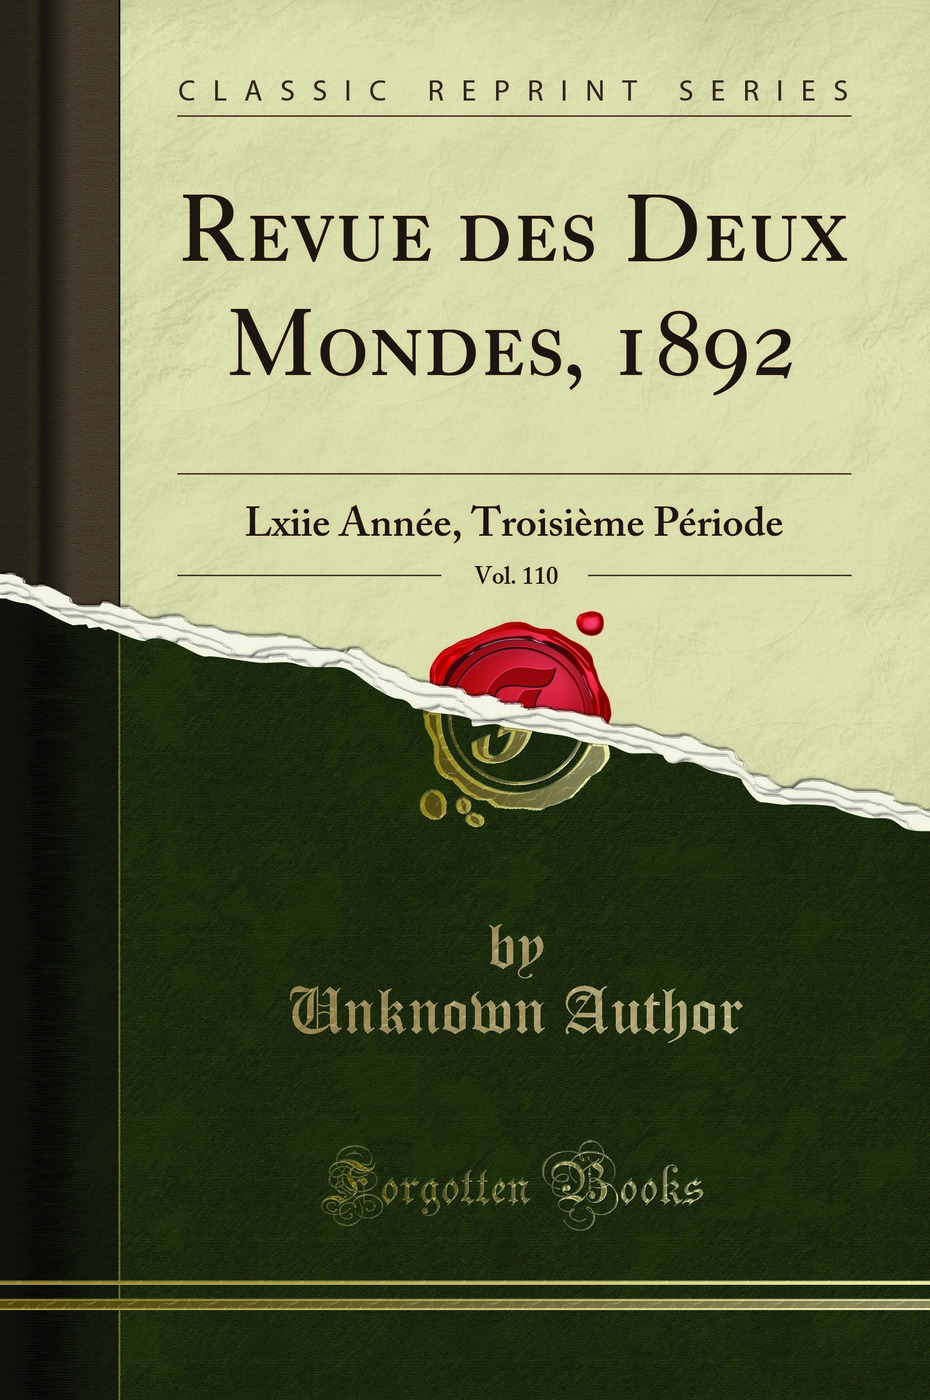 Revue des Deux Mondes, 1892, Vol. 110: Lxiie AnnÃ e, TroisiÃ me PÃ riode - Unknown